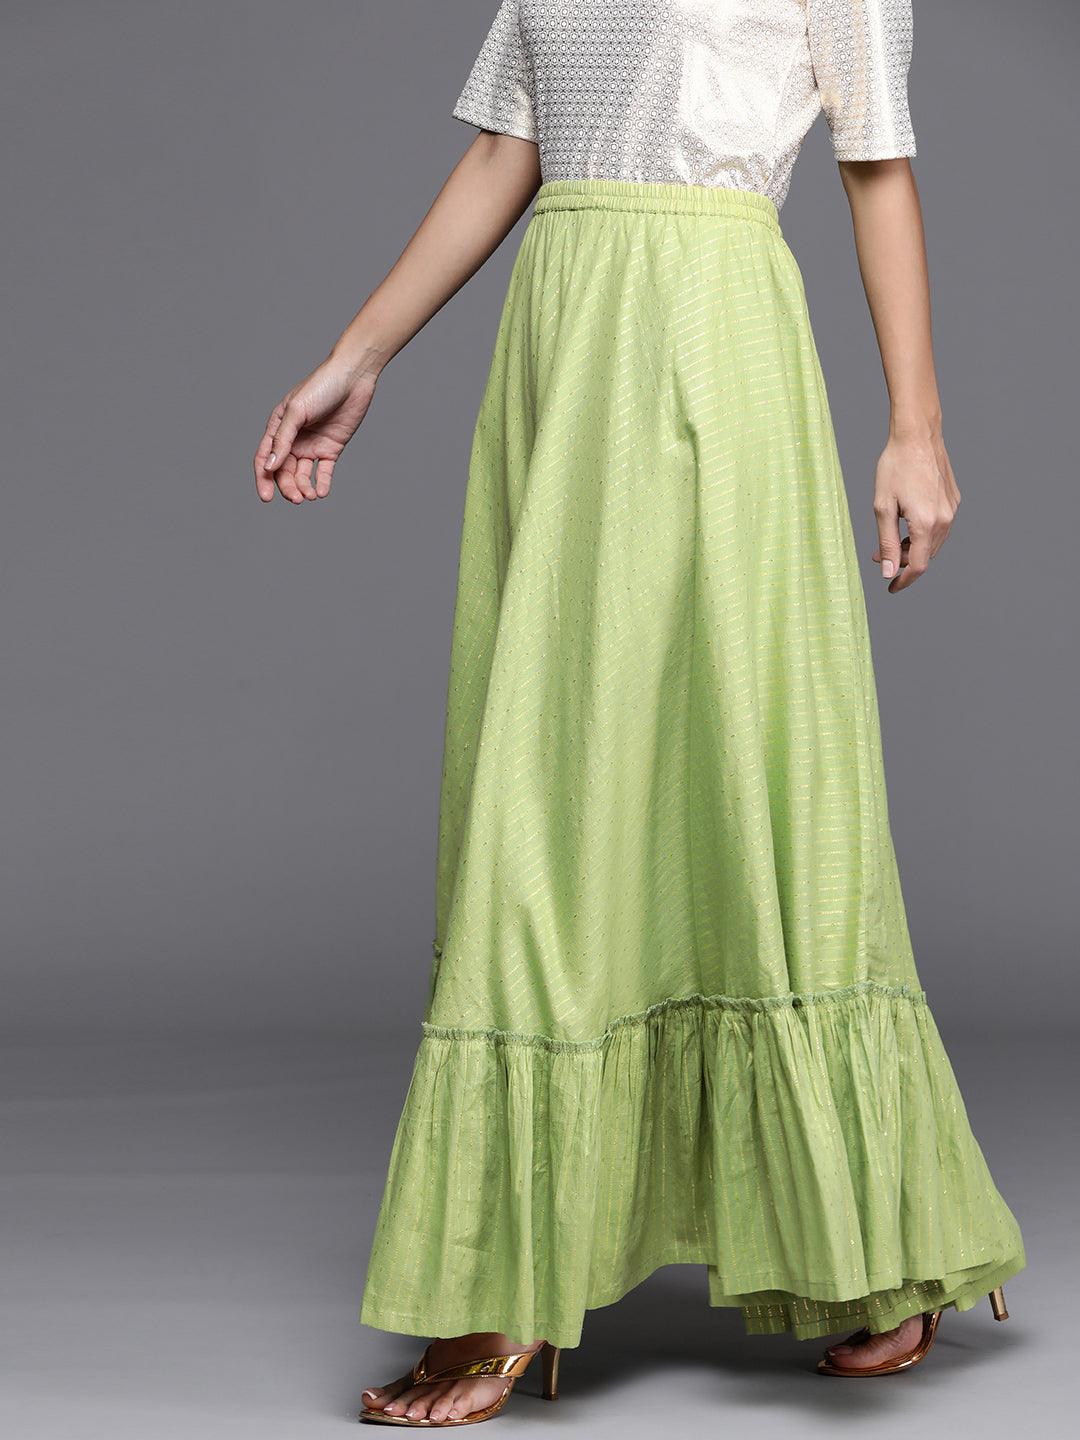 Green Self Design Cotton Skirt